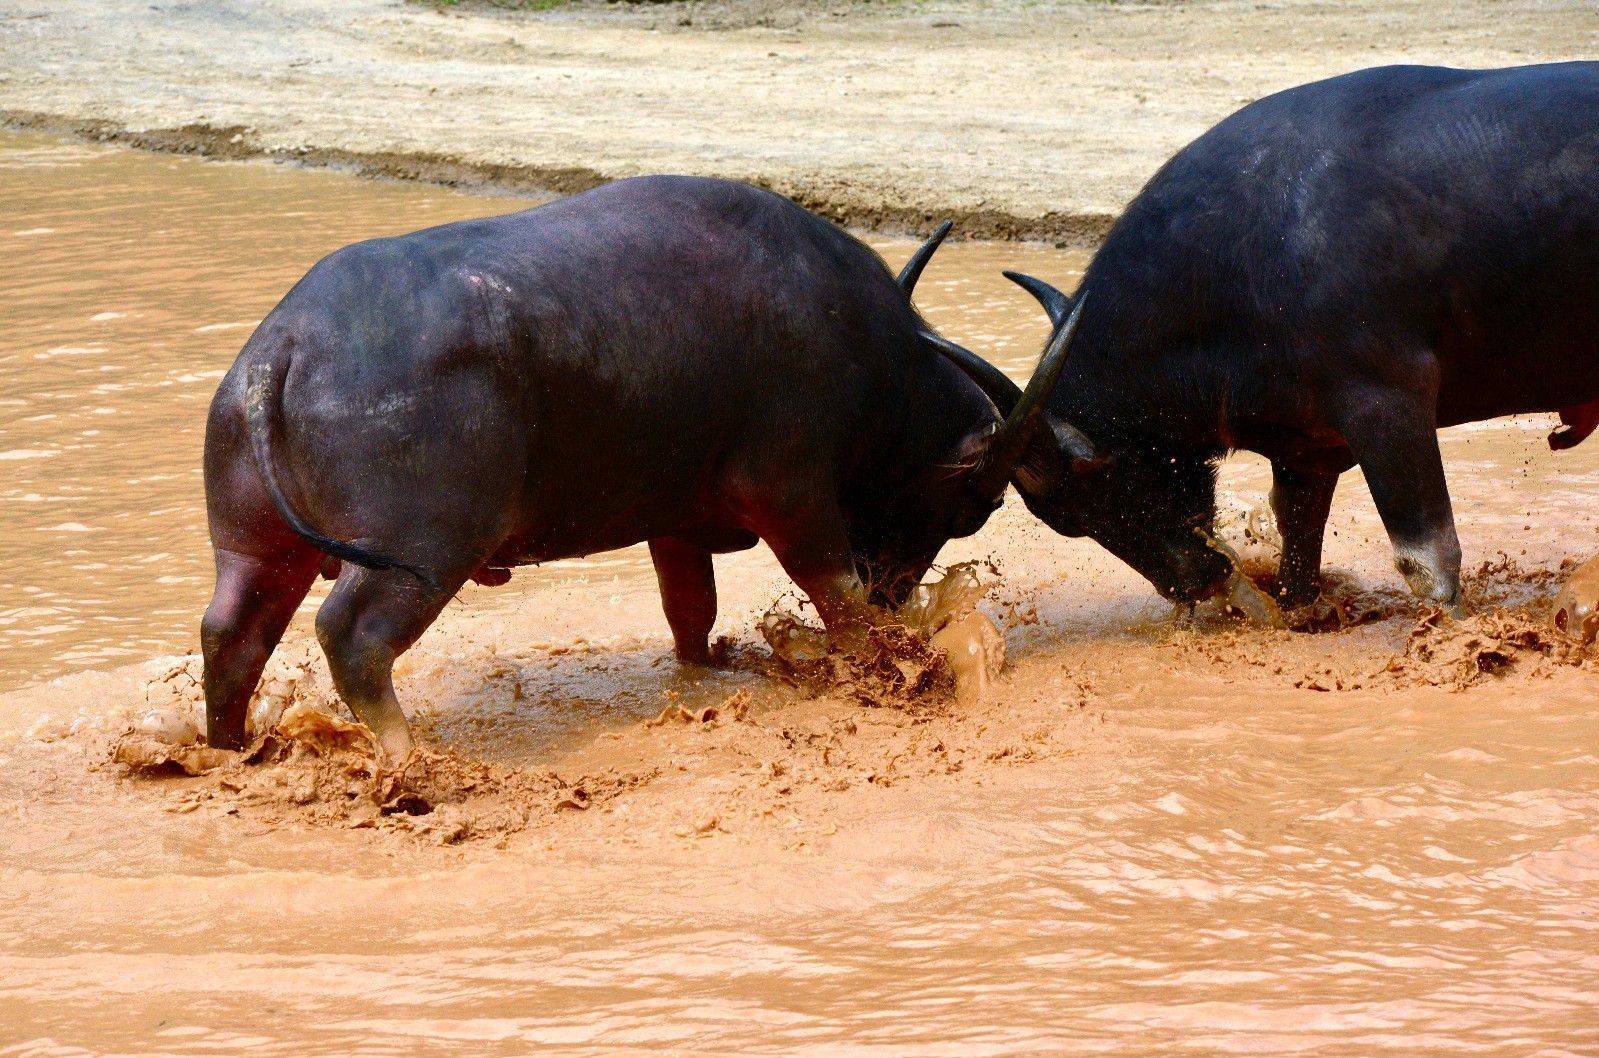 榕江县七十二寨侗族同胞有斗牛的传统,寨寨养有斗牛,以斗牛胜利为荣